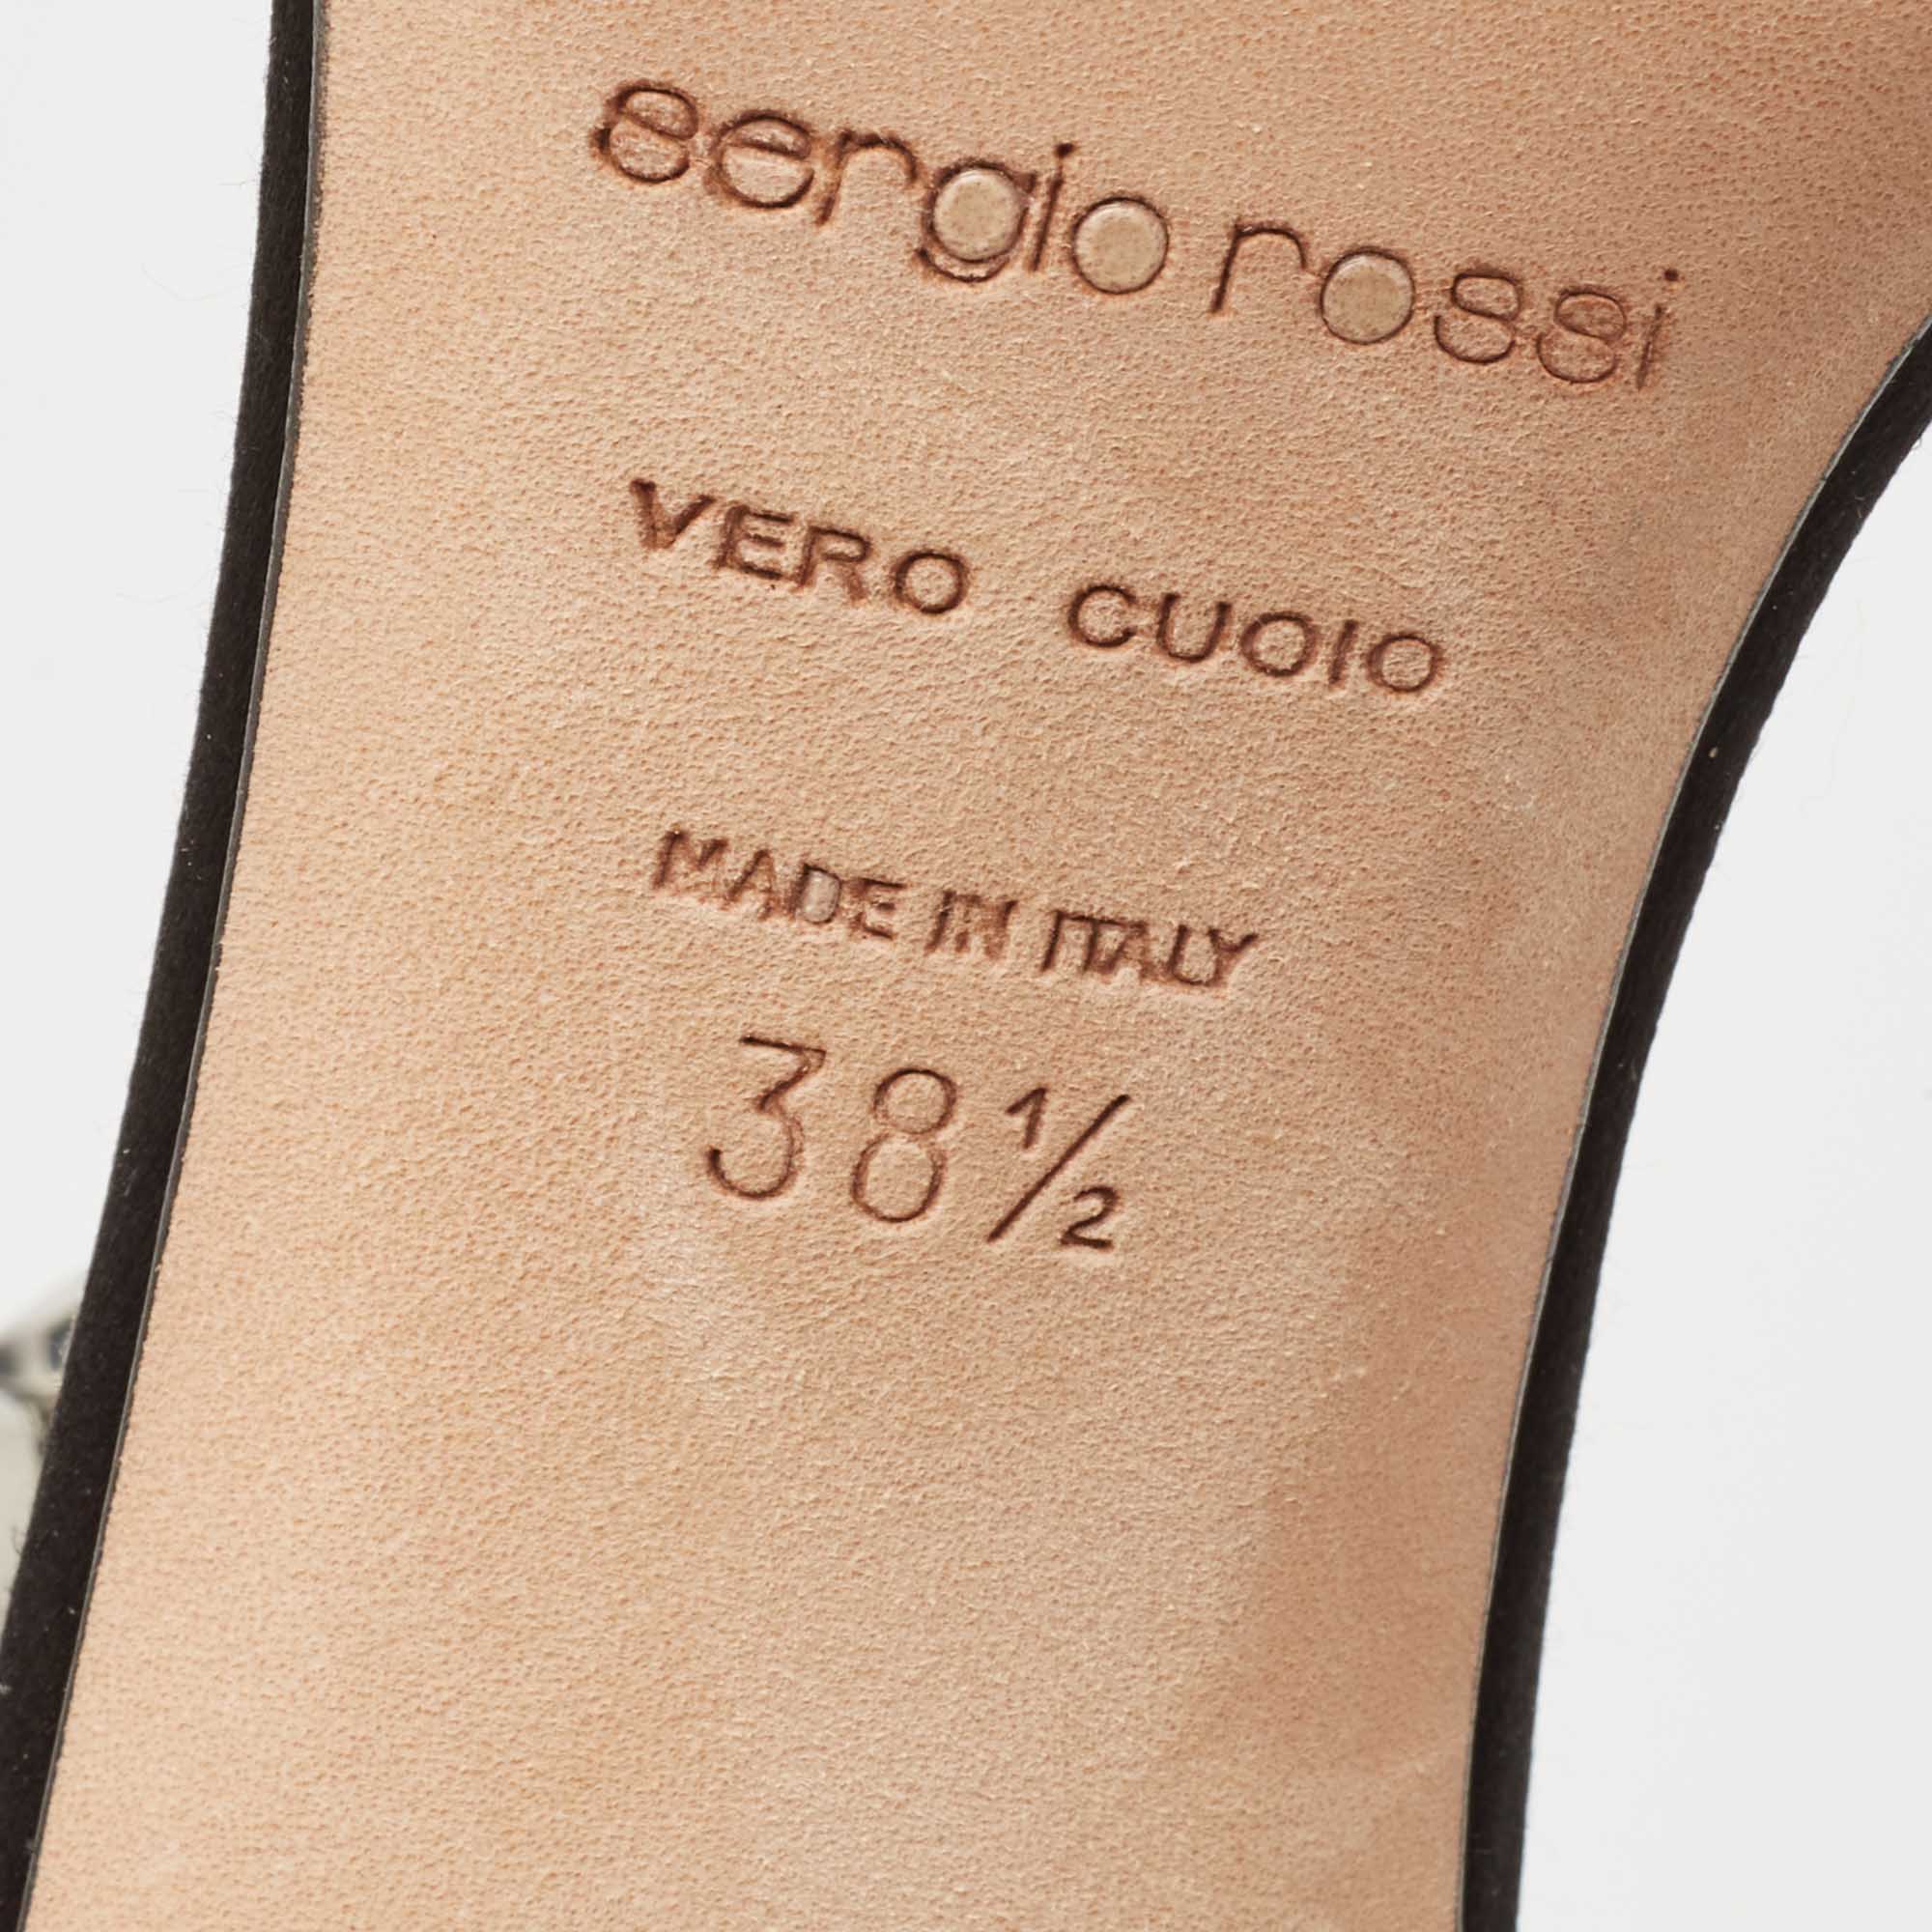 Sergio Rossi Black Satin Crystal Embellished Ankle Strap Sandals Size 38.5